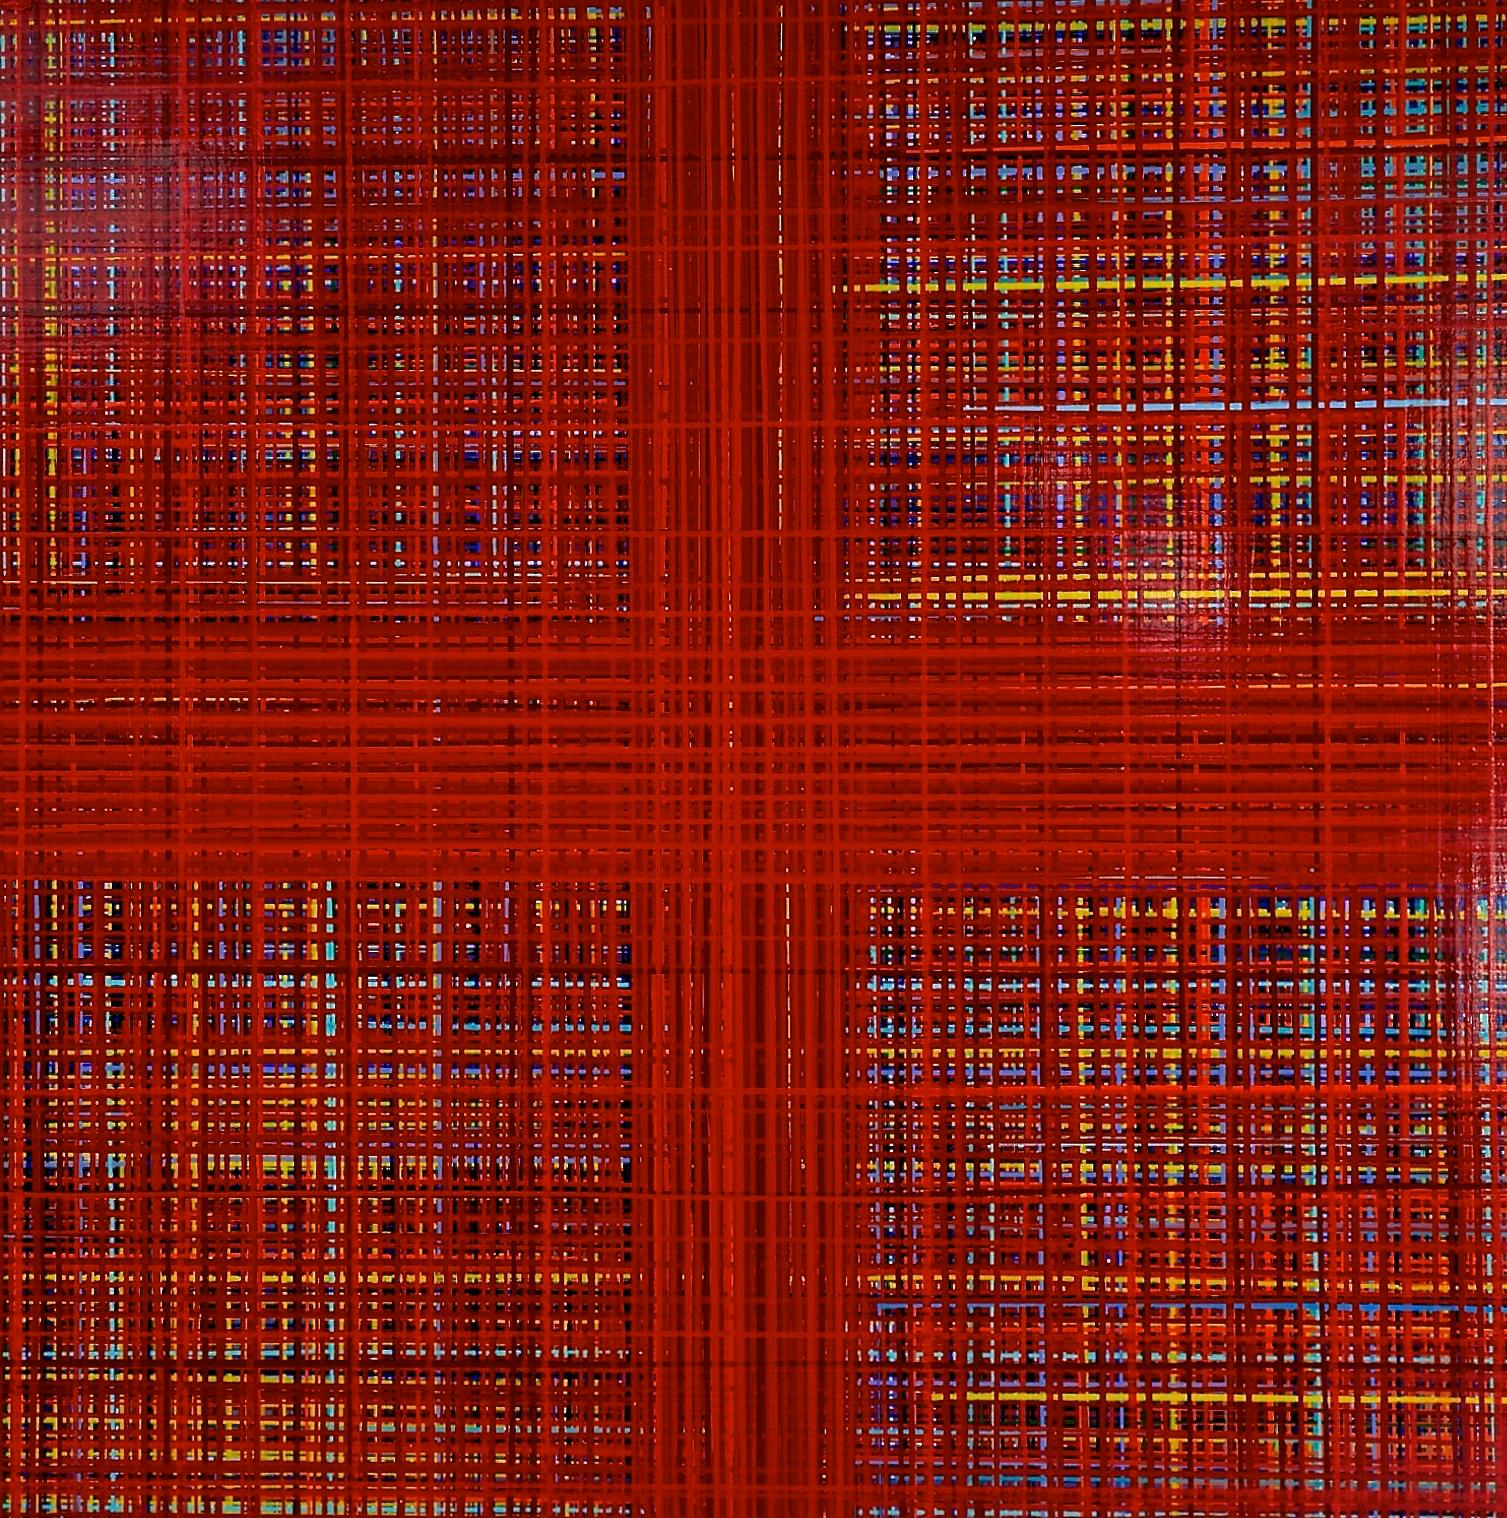 "Doppelt plus gut"
84" x 84"  
Abstrakte Acrylmalerei des in NY lebenden Künstlers Jon James.

Jon James' Arbeiten zeichnen sich durch prächtige Farbflächen aus und nutzen eine vertraute Methode, das Tropfen von Farbe, um eine unglaubliche Tiefe zu